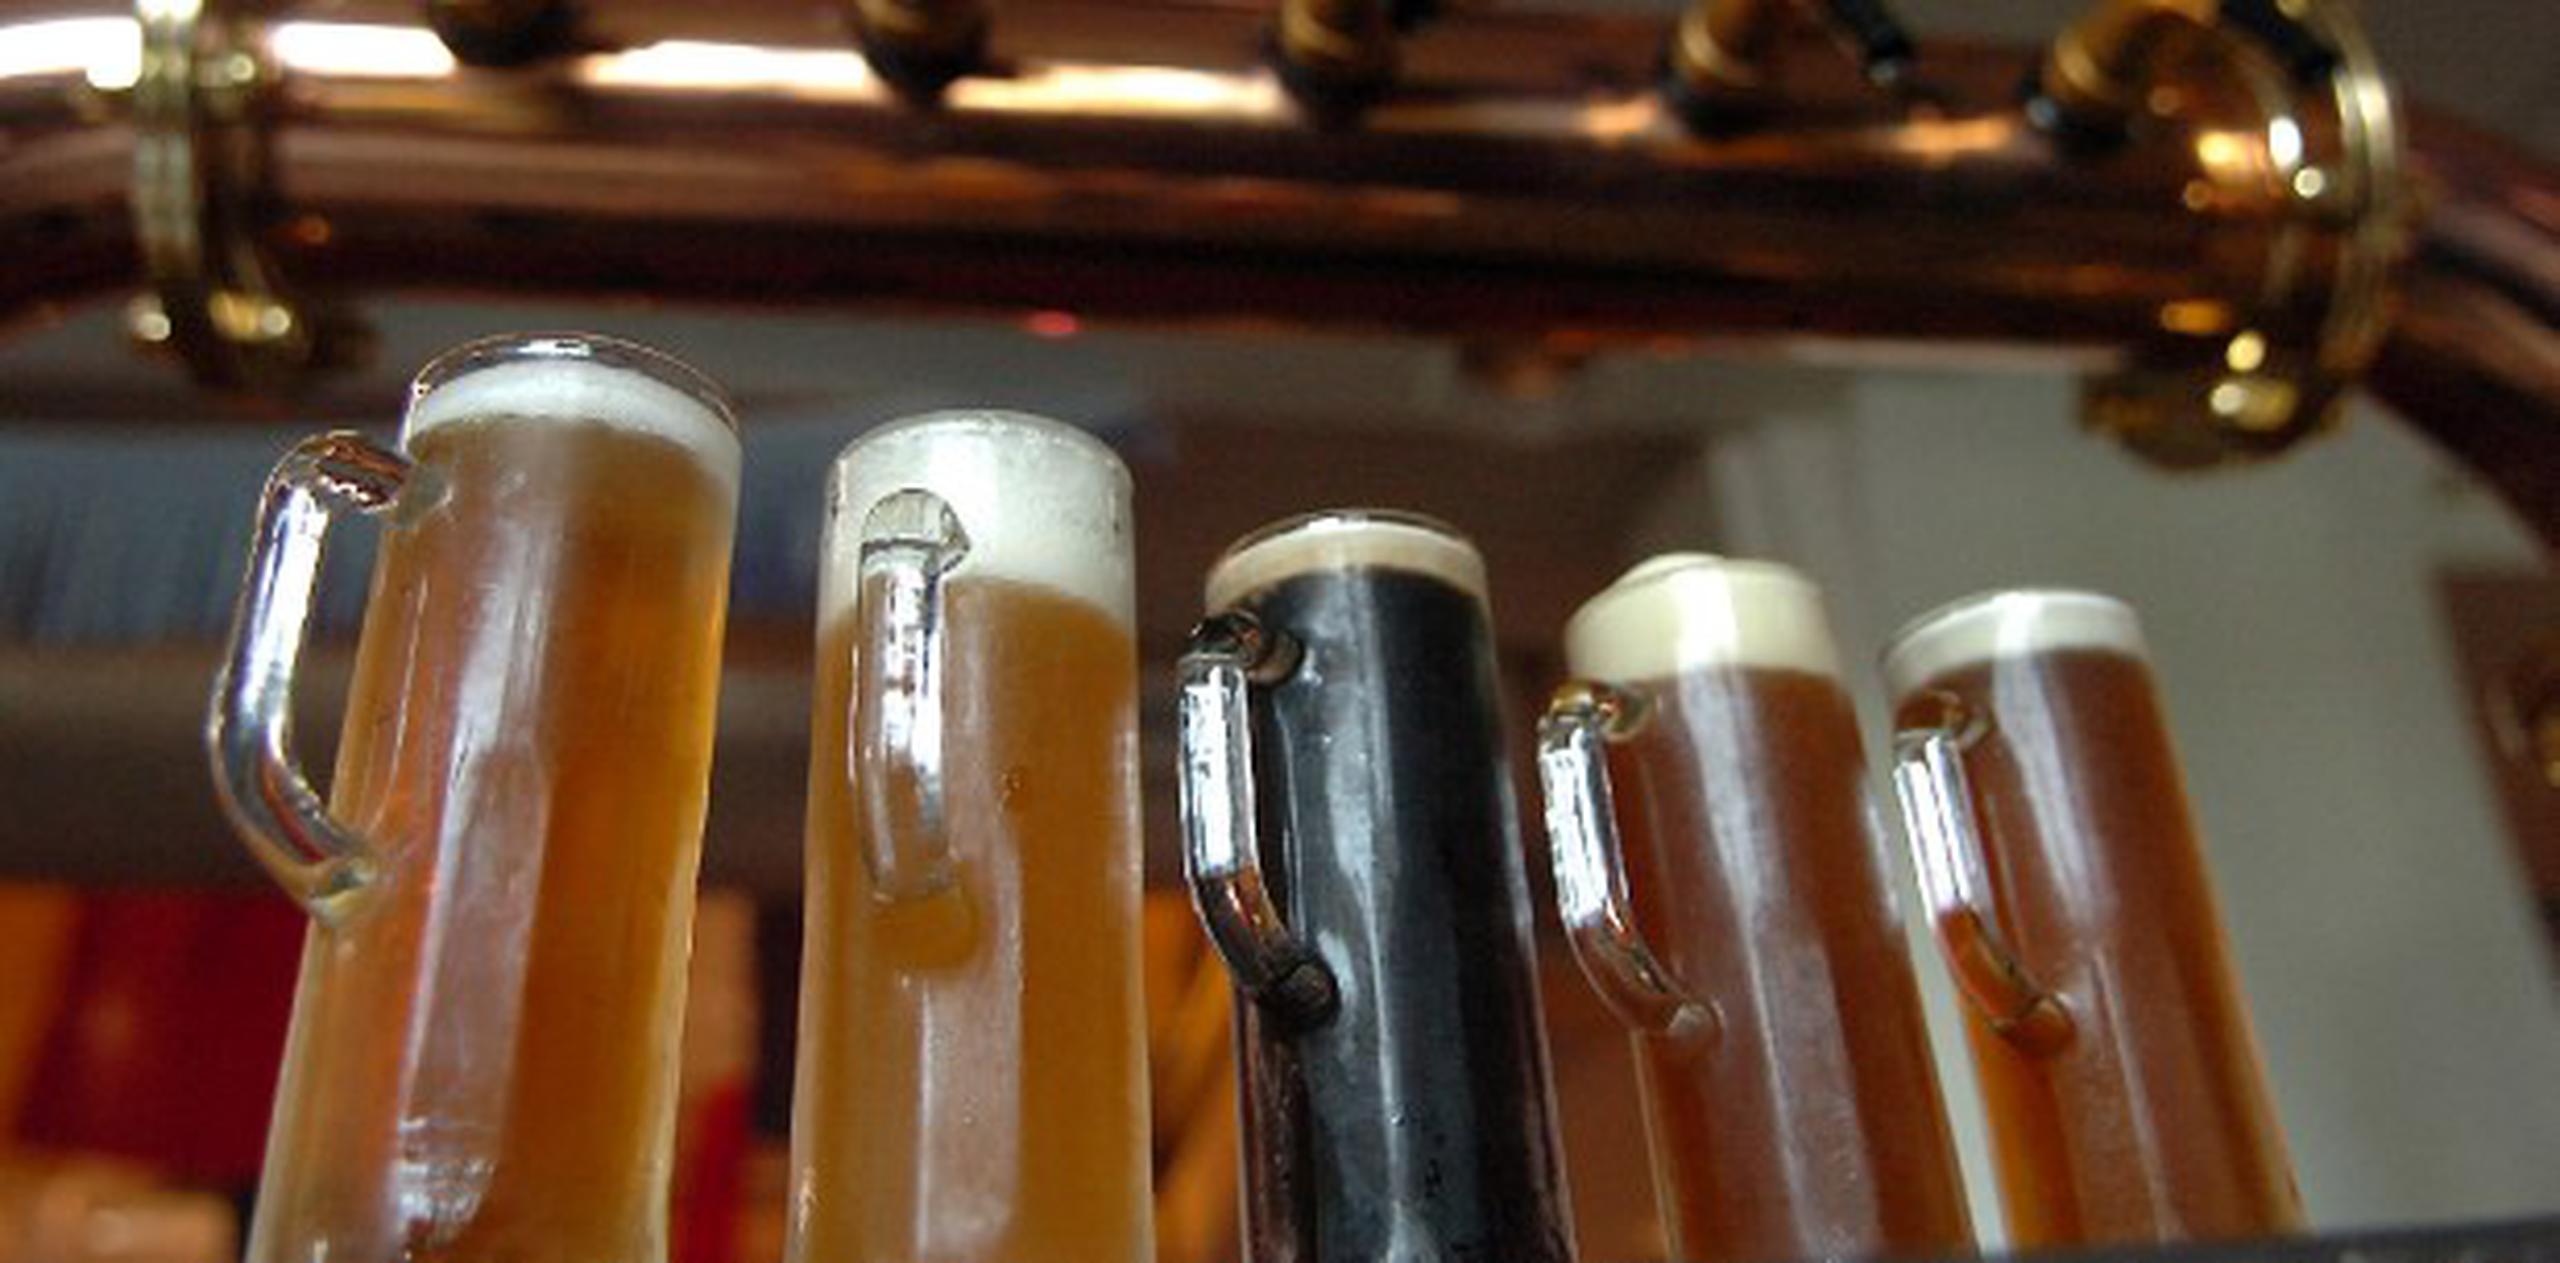 Old Harbor Brewery es hoy la compañía de elaboración de cerveza artesanal más importante de Puerto Rico. (Archivo)